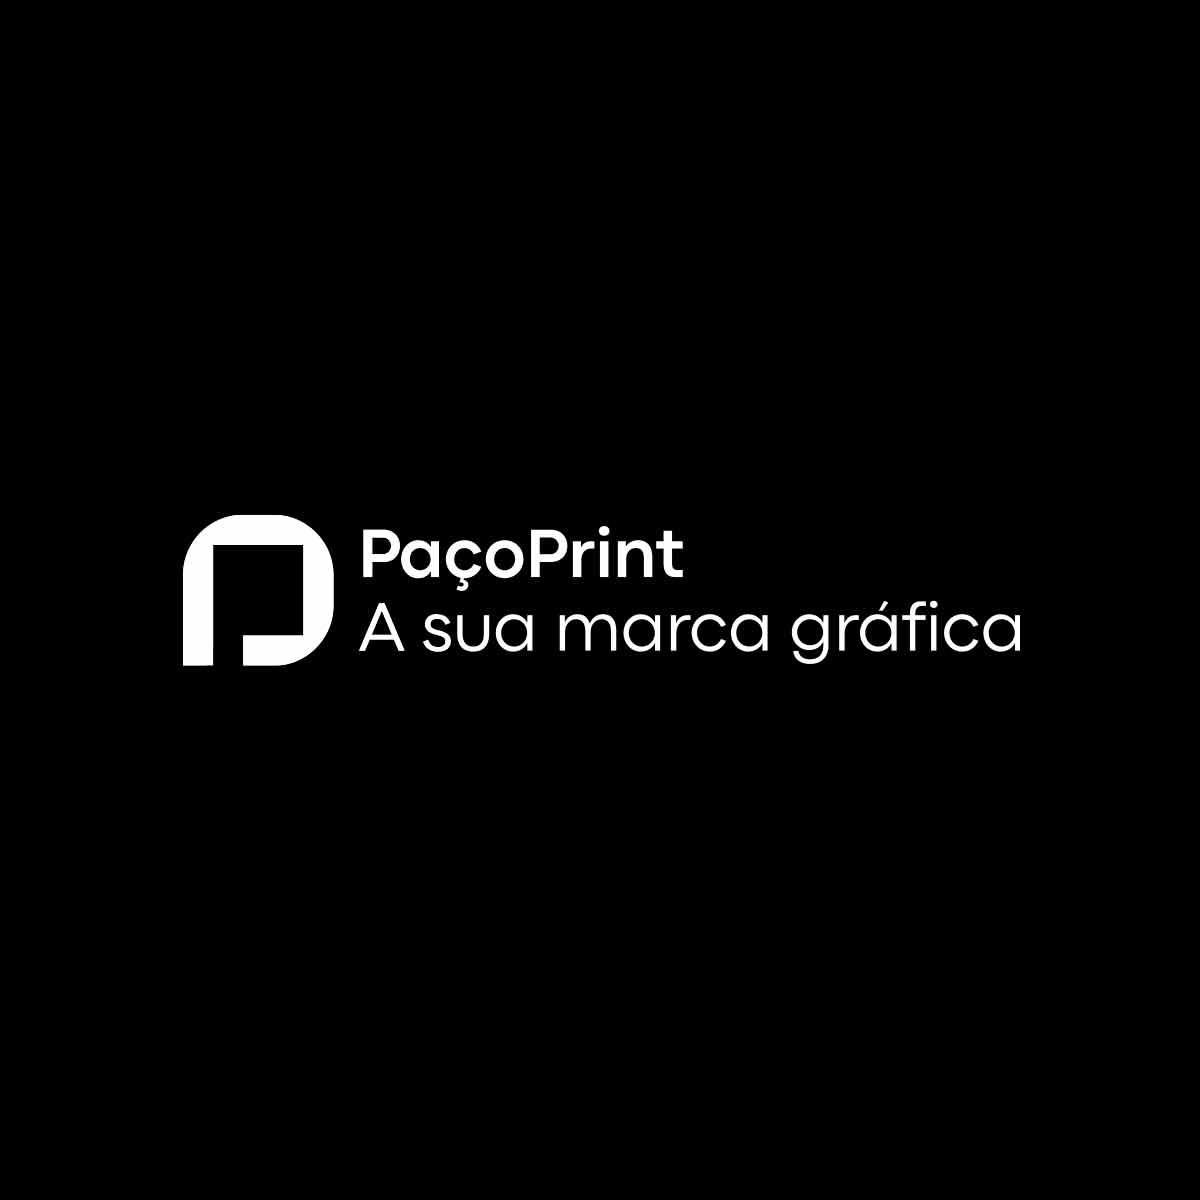 Vídeo pacoprint